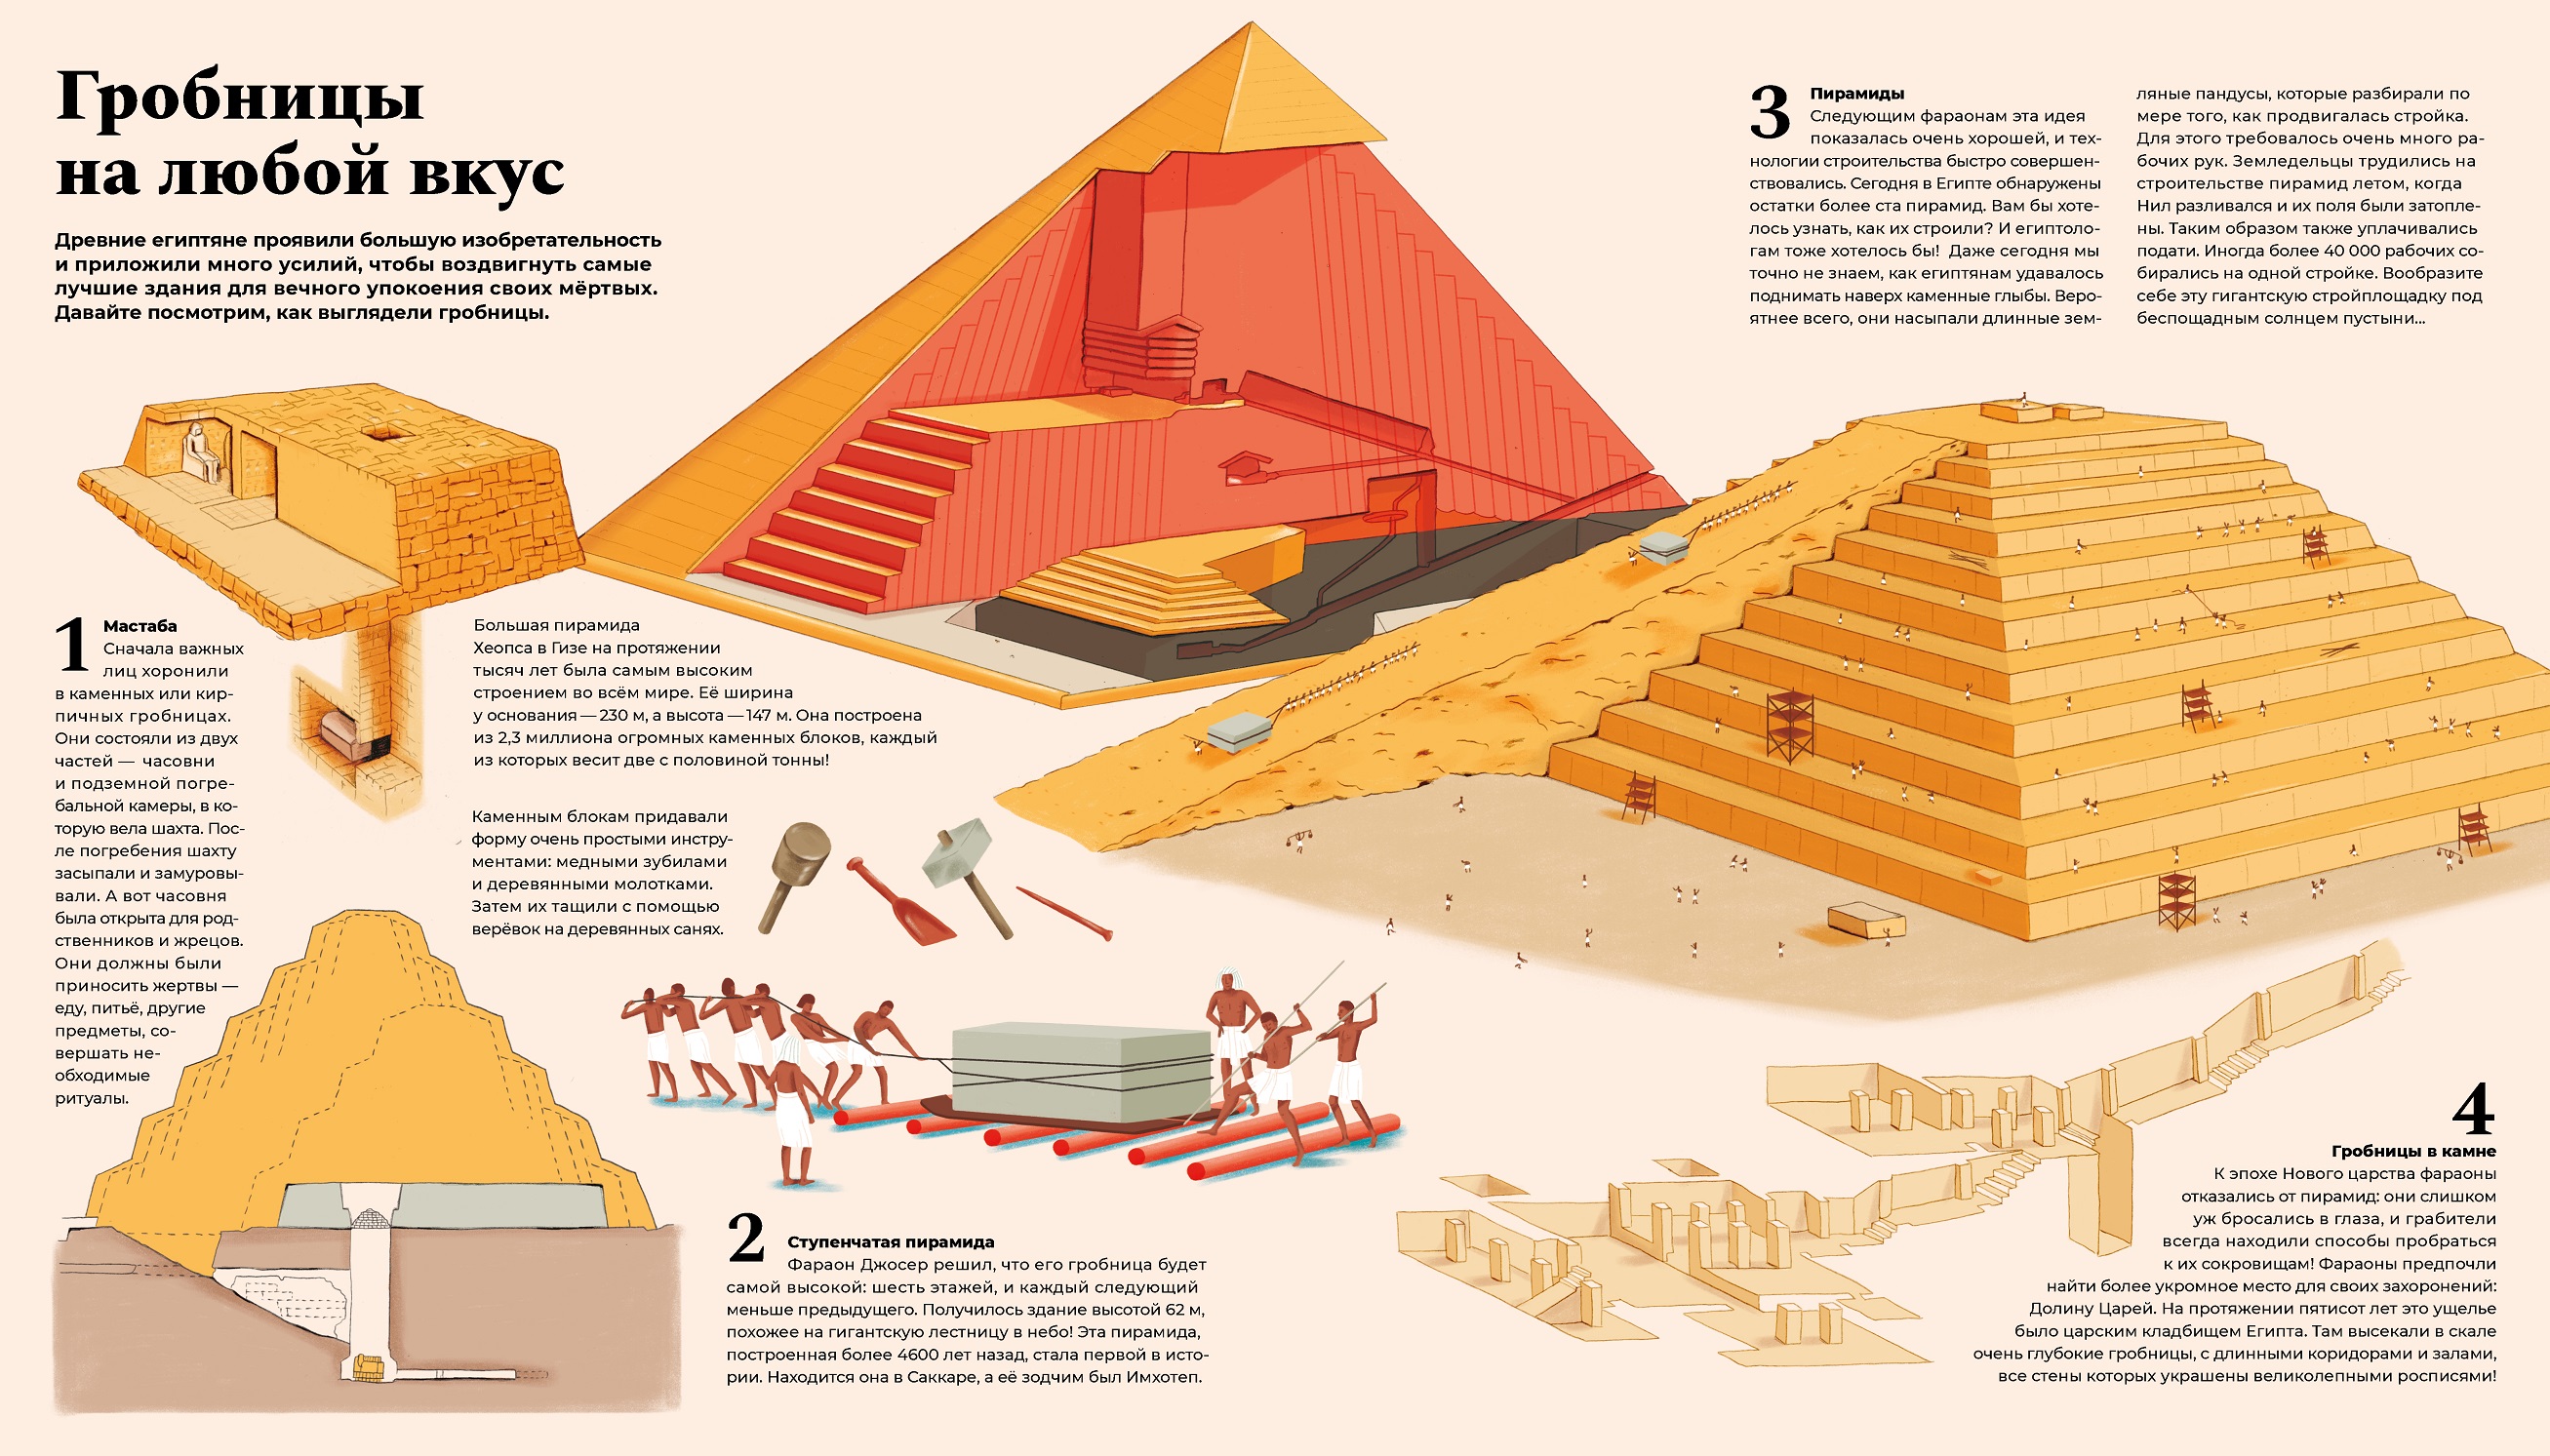 Тутанхамон. Как была найдена гробница юного фараона - купить книгу в  издательстве "Пешком в историю" ISBN 978-5-907471-42-9